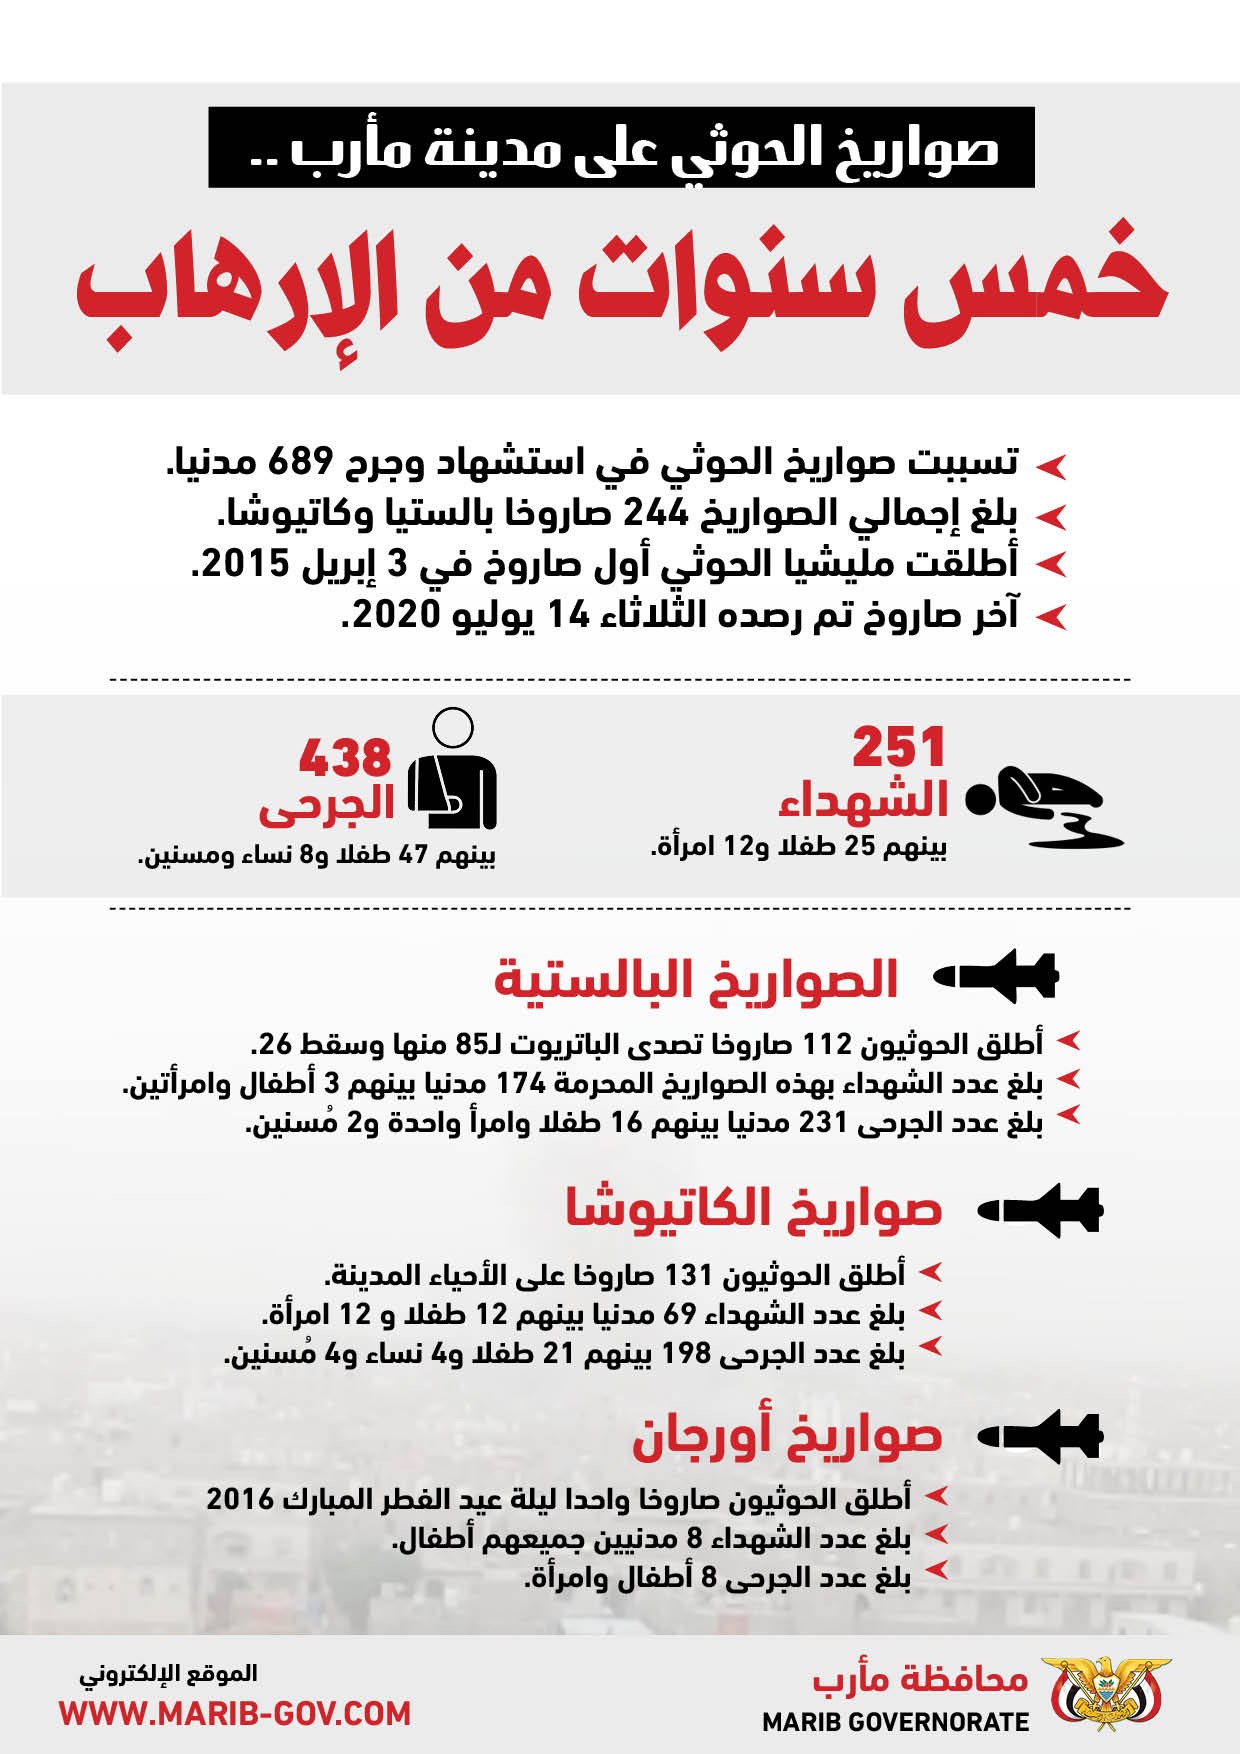 بالأرقام.. حصاد خمس سنوات من الإرهاب الحوثي بحق المدنيين في مأرب